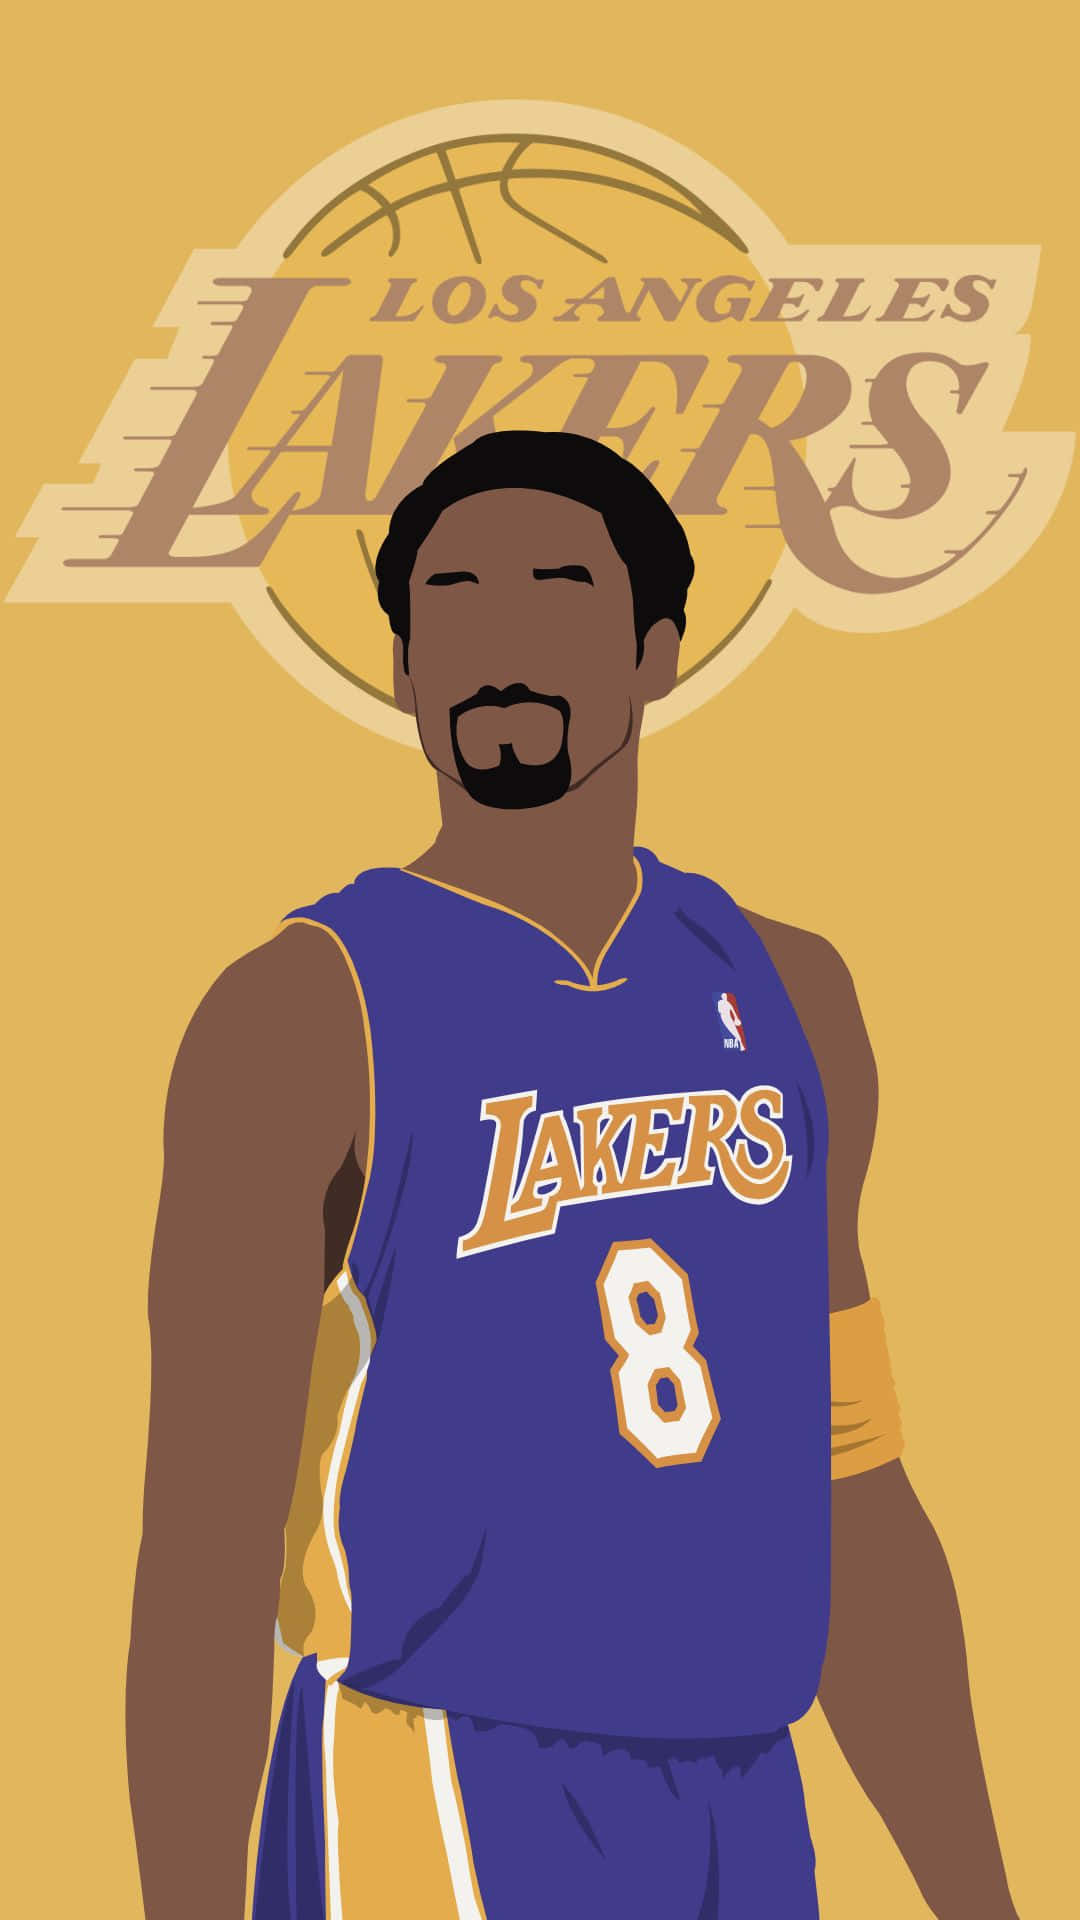 Kobe Bryant fra Los Angeles Lakers, der viser hans legendariske basketball-færdigheder Wallpaper